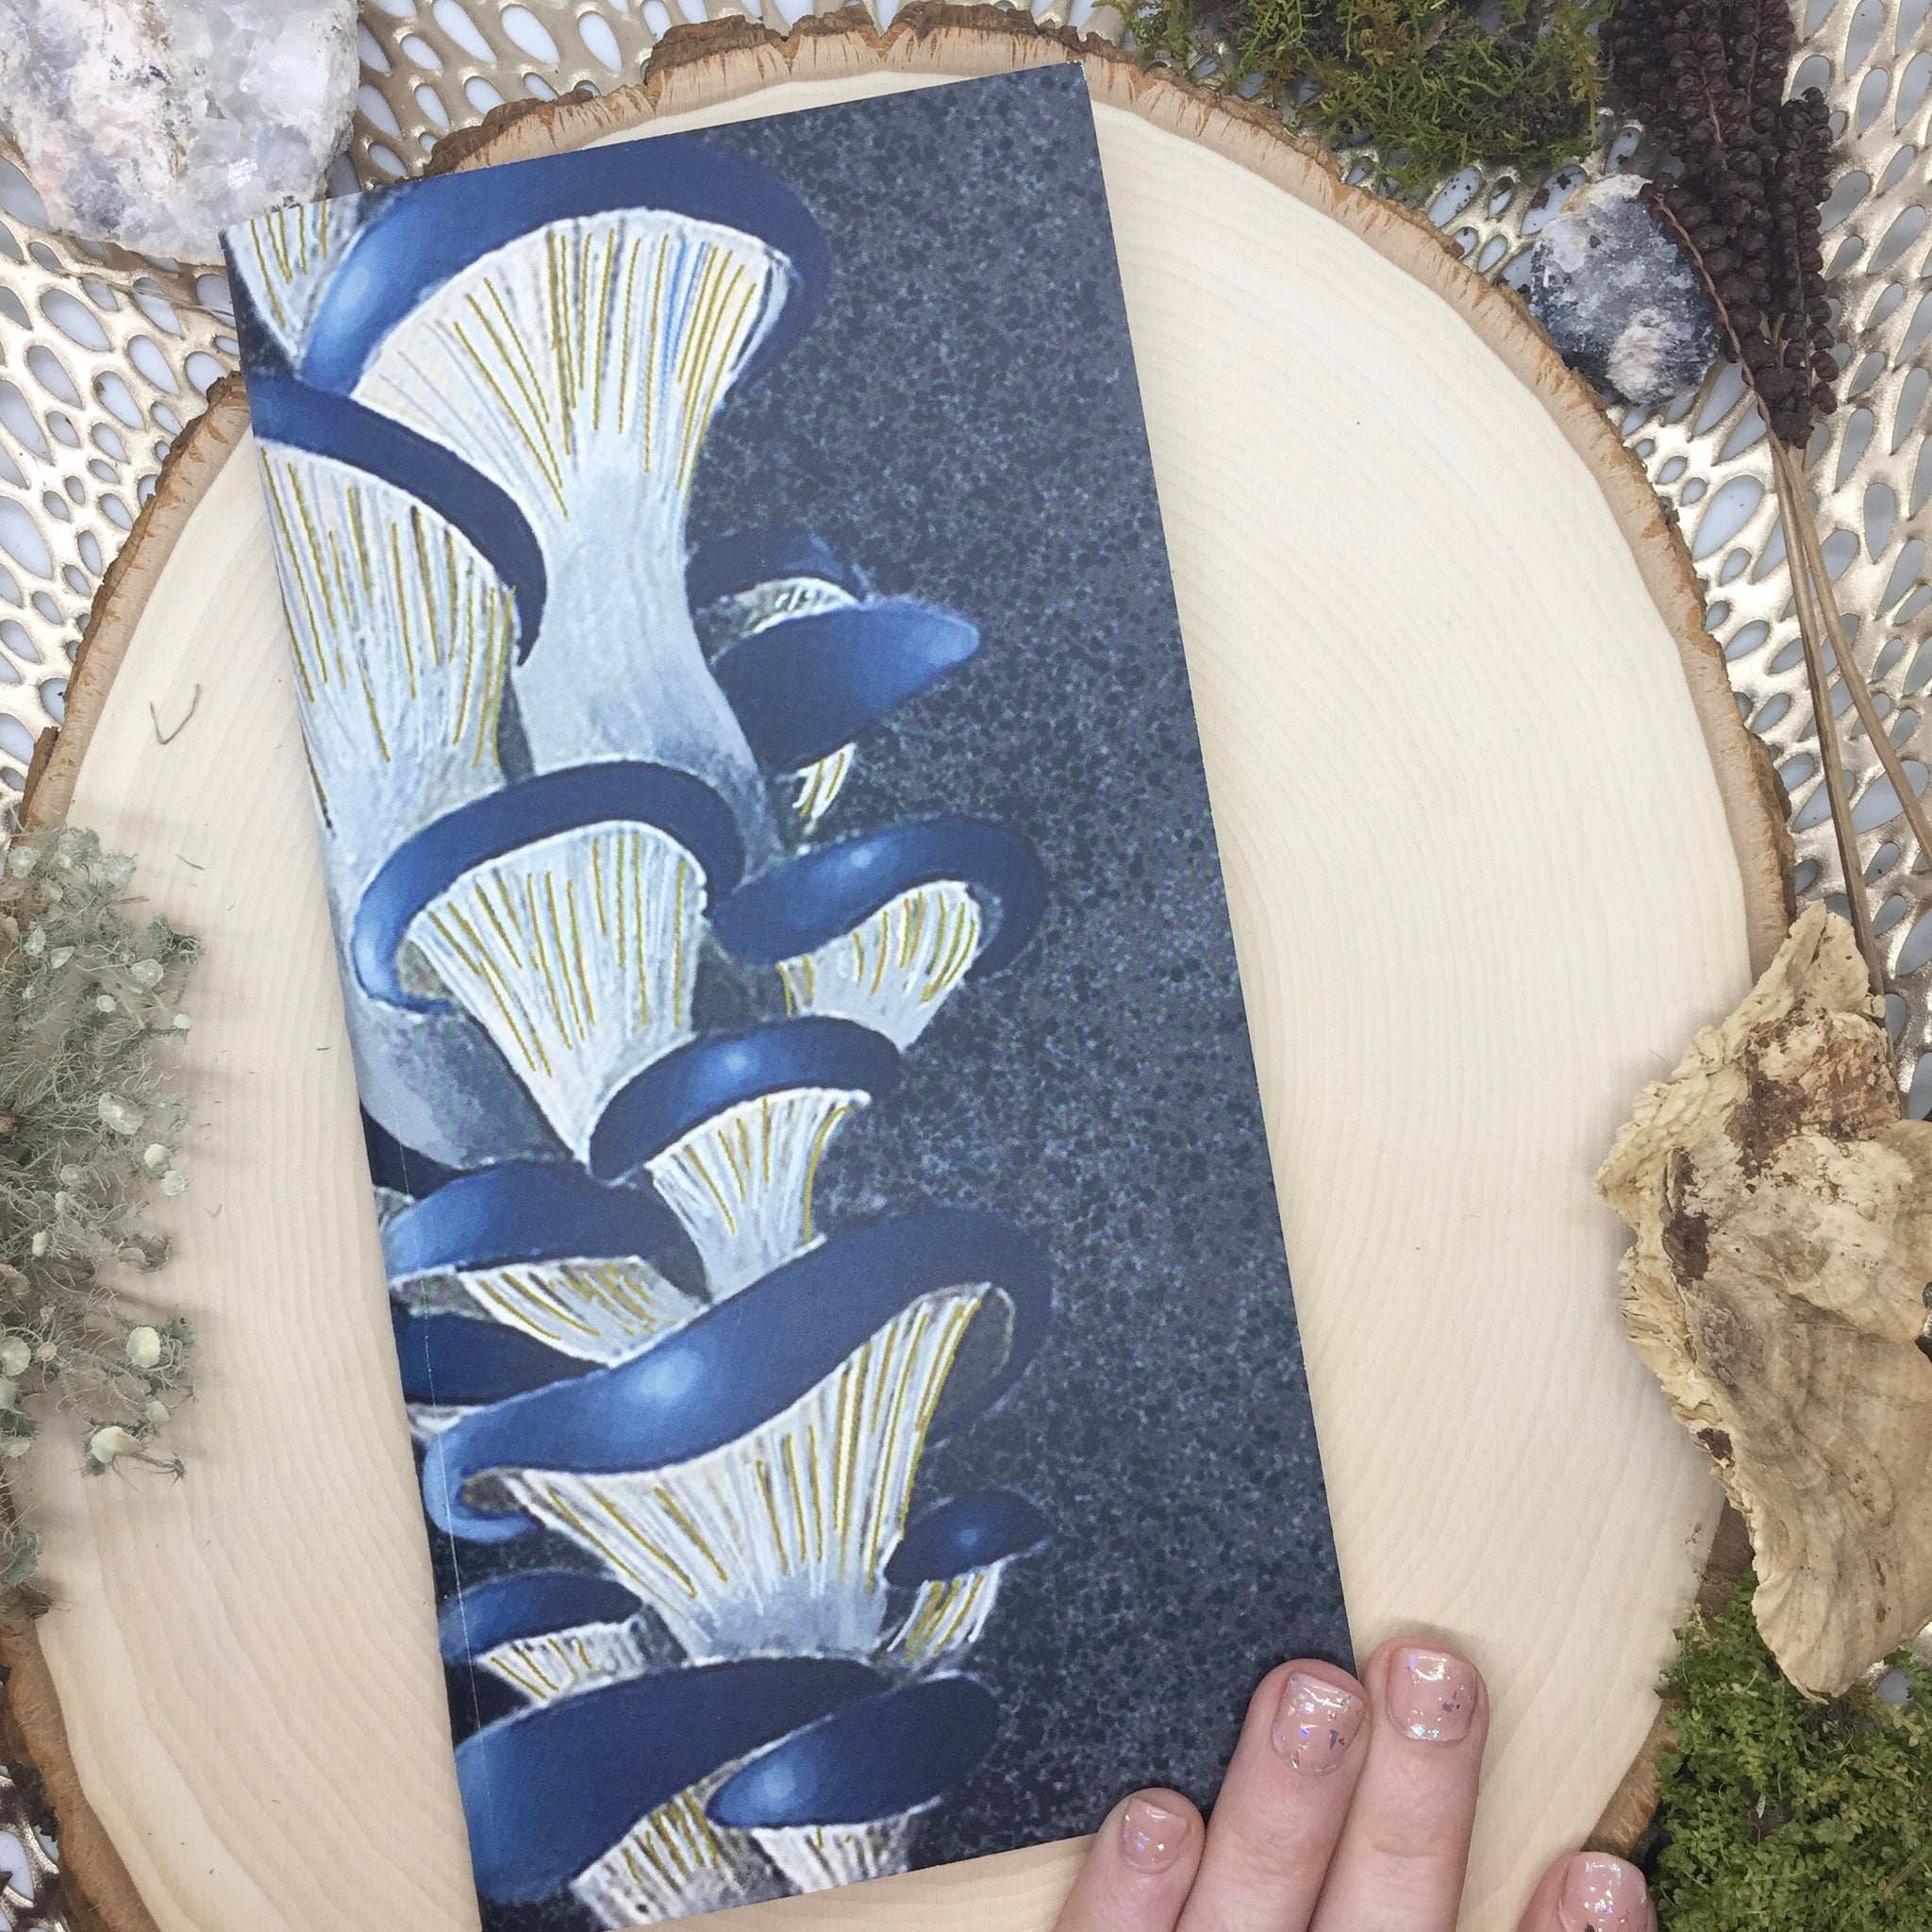 Blue Oyster Mushroom Mini Sketchbook - Wildwood Wonder